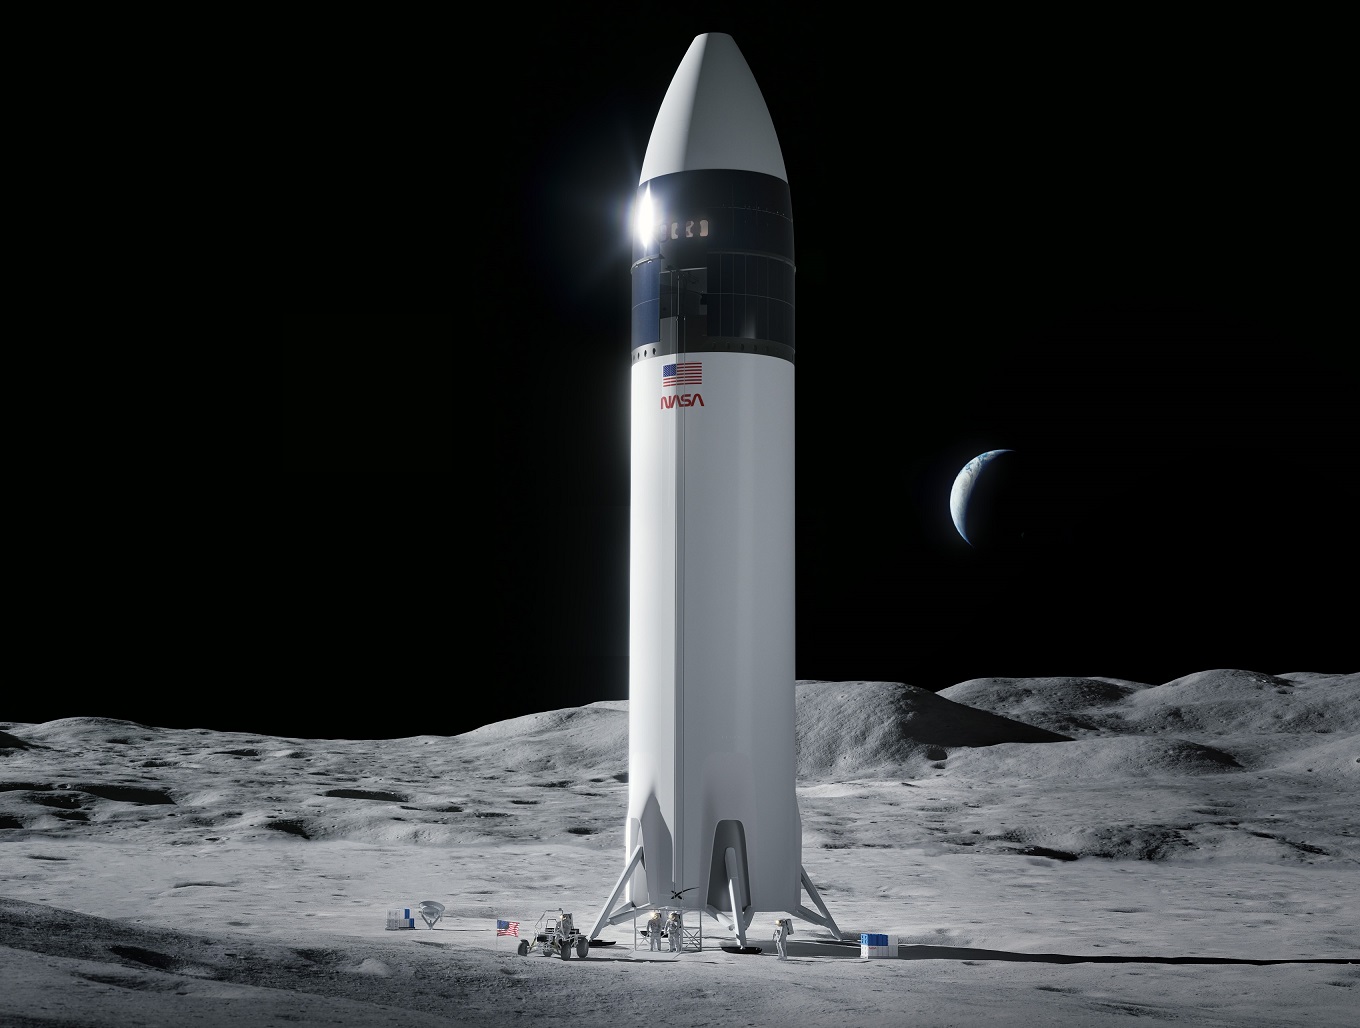 Jeff Bezosék megfúrták a SpaceX és a NASA több milliárd dolláros szerződését